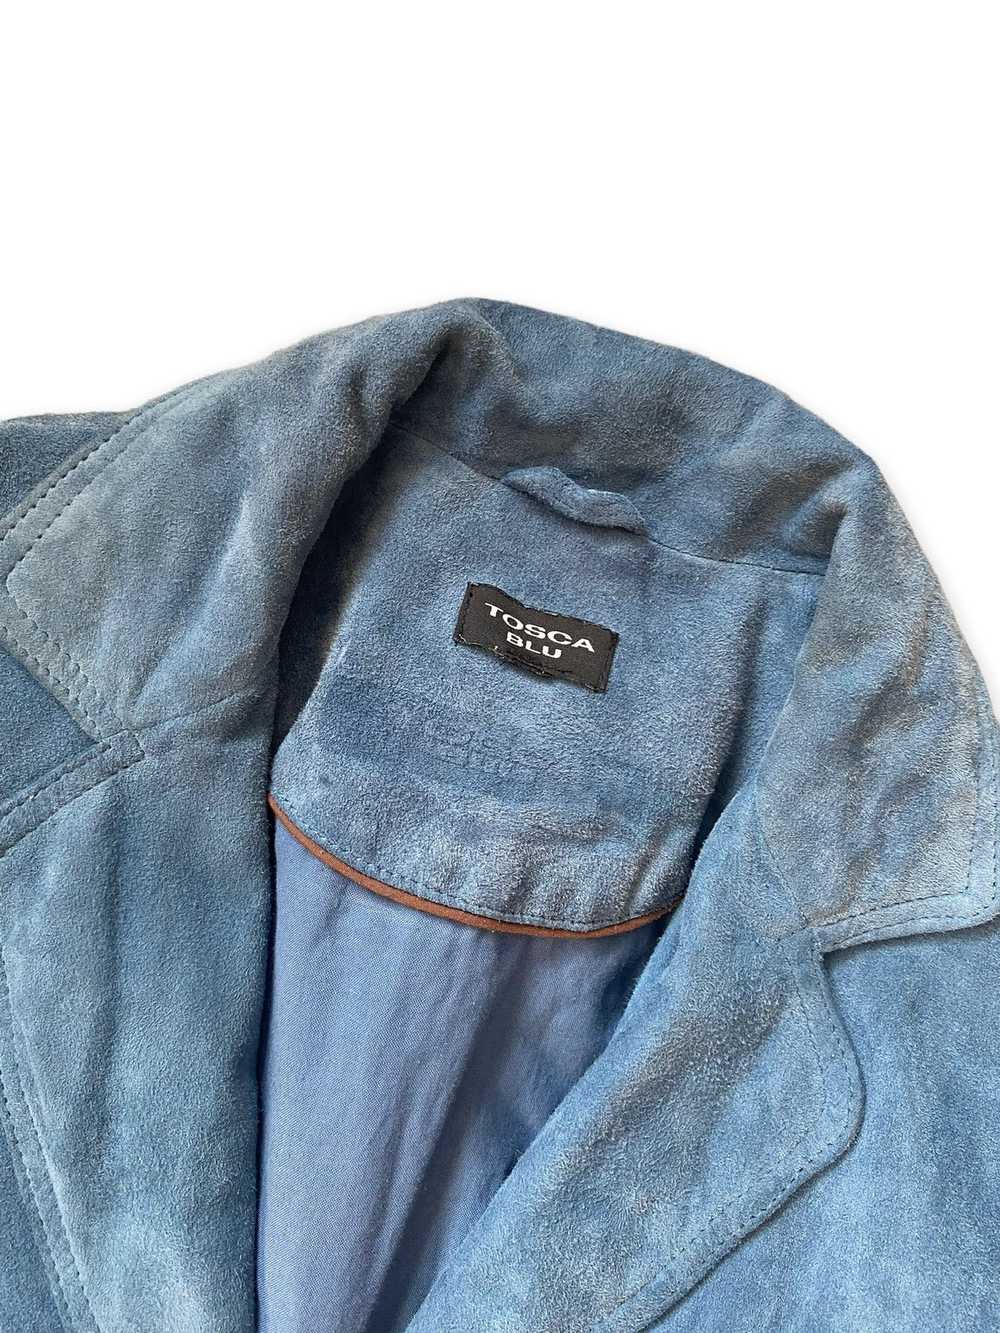 Vintage Tosca Blu blue 100% leather suede jacket … - image 3